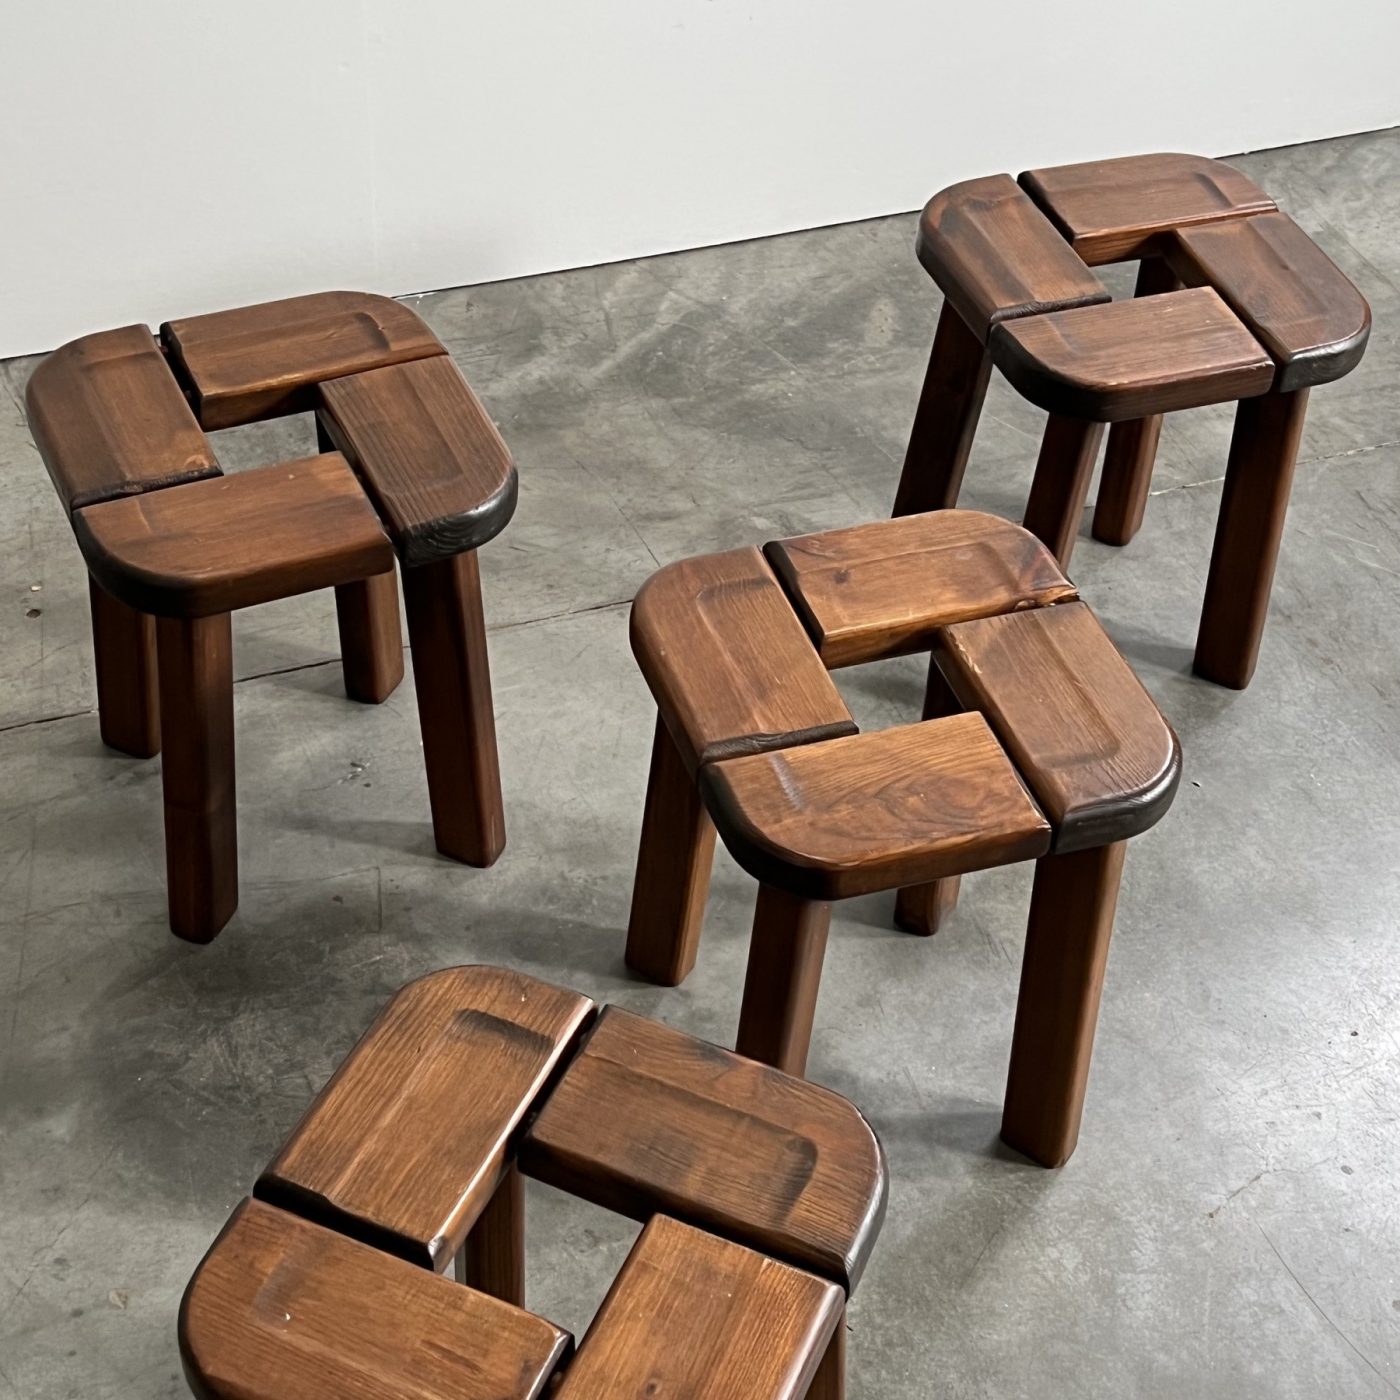 objet-vagabond-vintage-stools0002